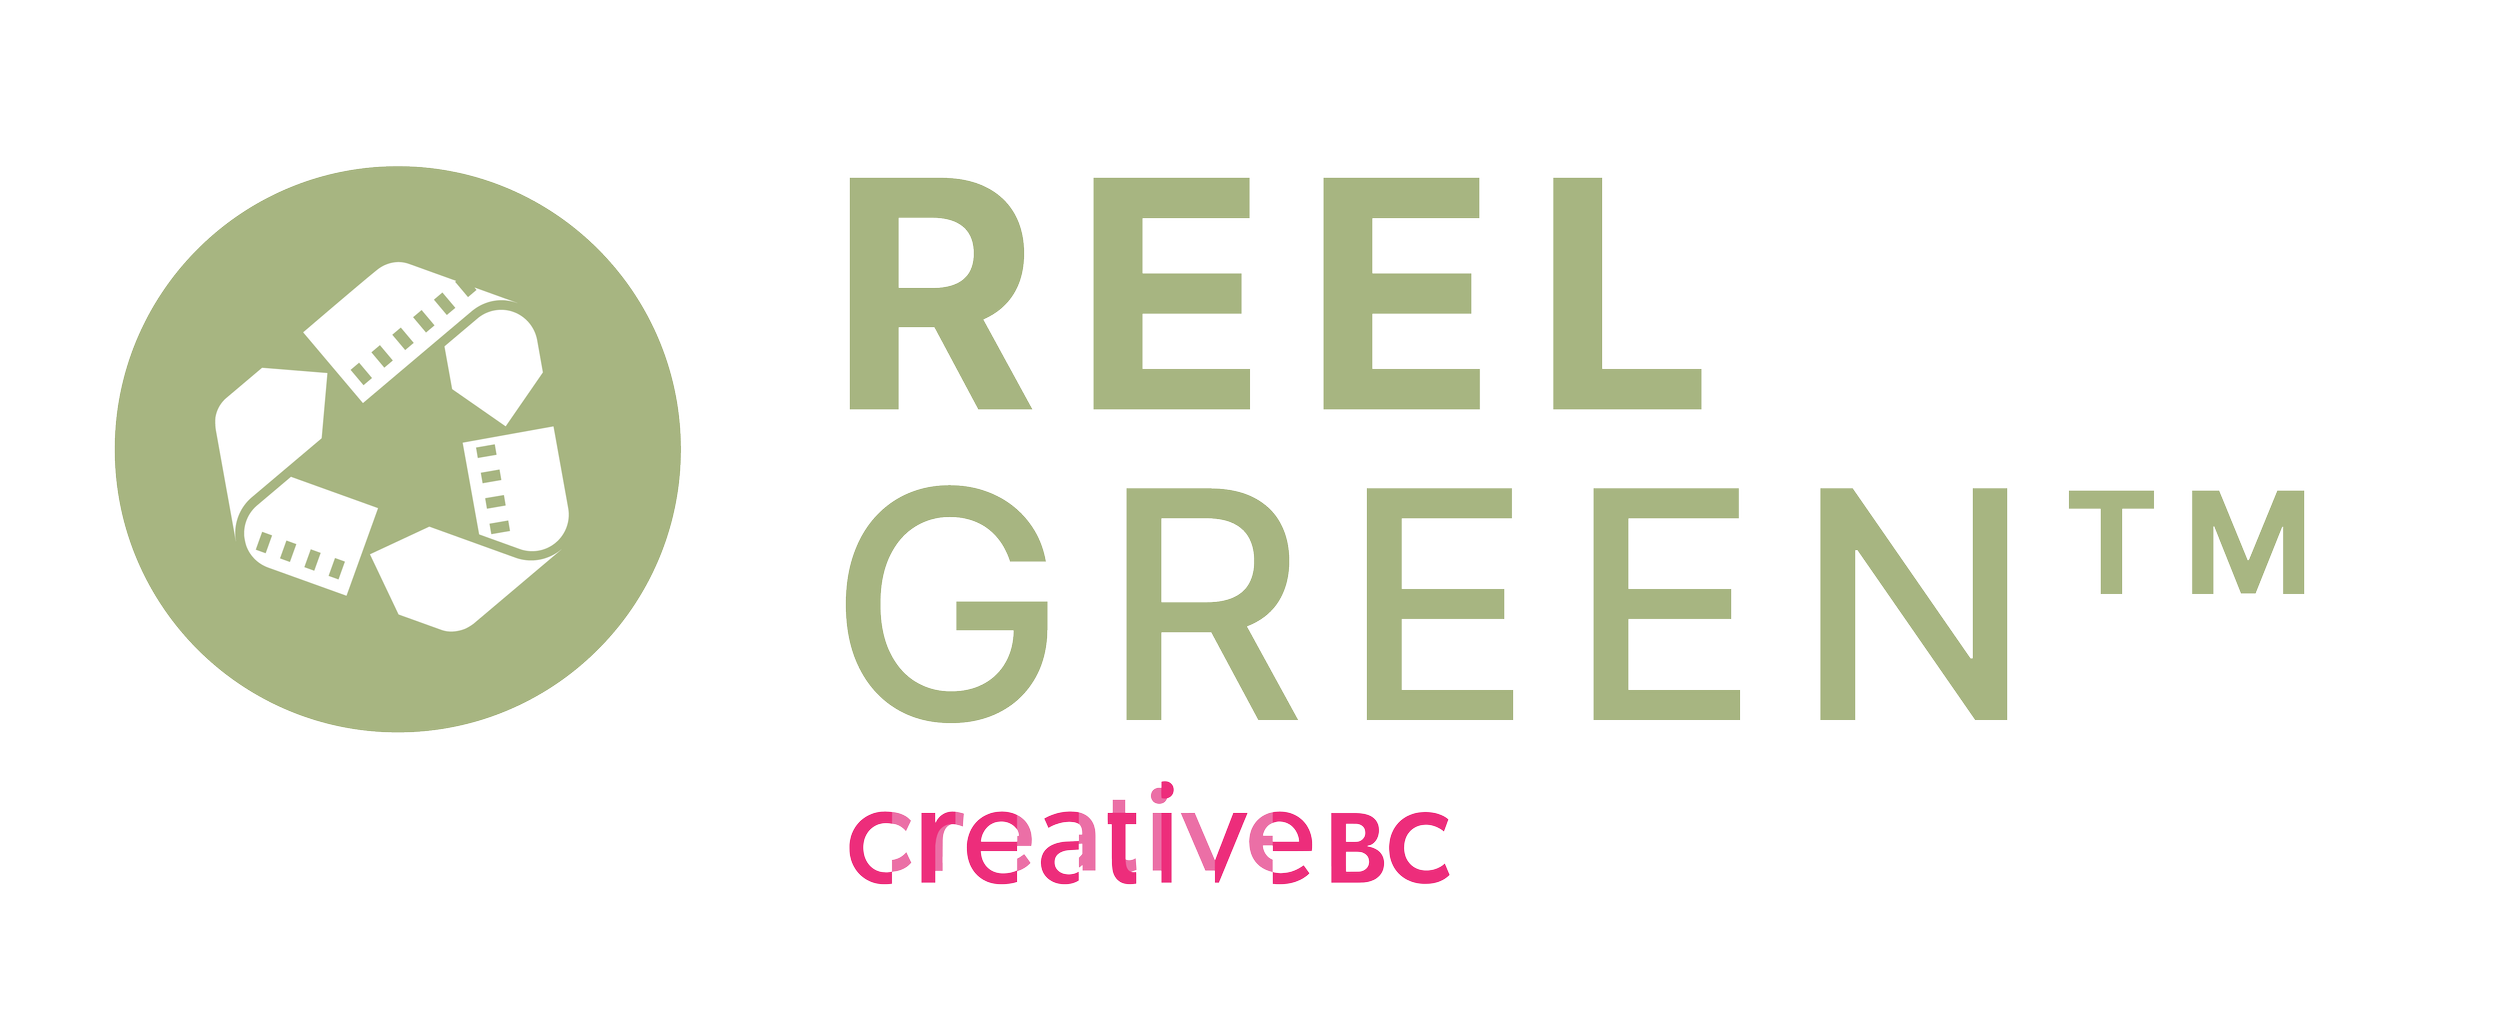 ReelGreen_Logo_CrBC.png